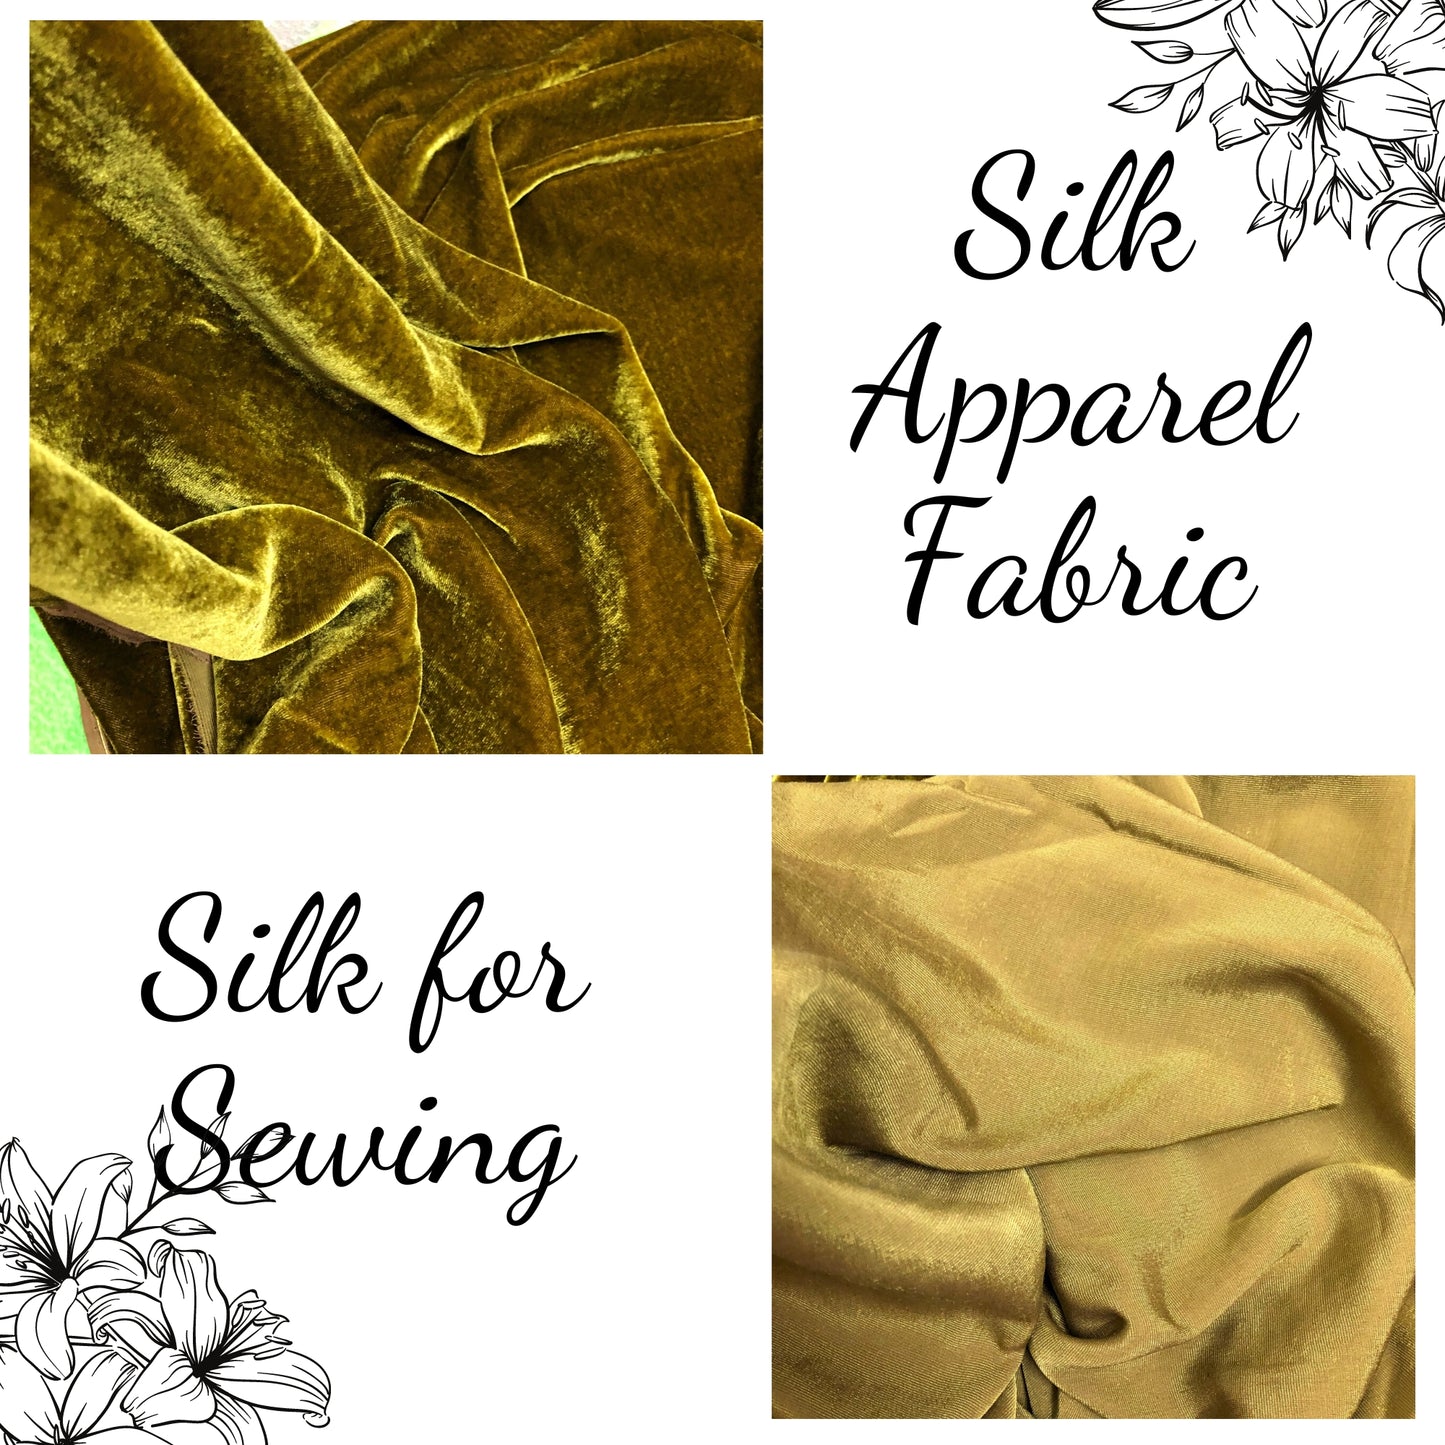 100% MULBERRY SILK VELVET fabric by the yard - Luxury Silk Velvet for Dress, Skirt, High End Garment - Silk apparel fabric - Velvet fabric